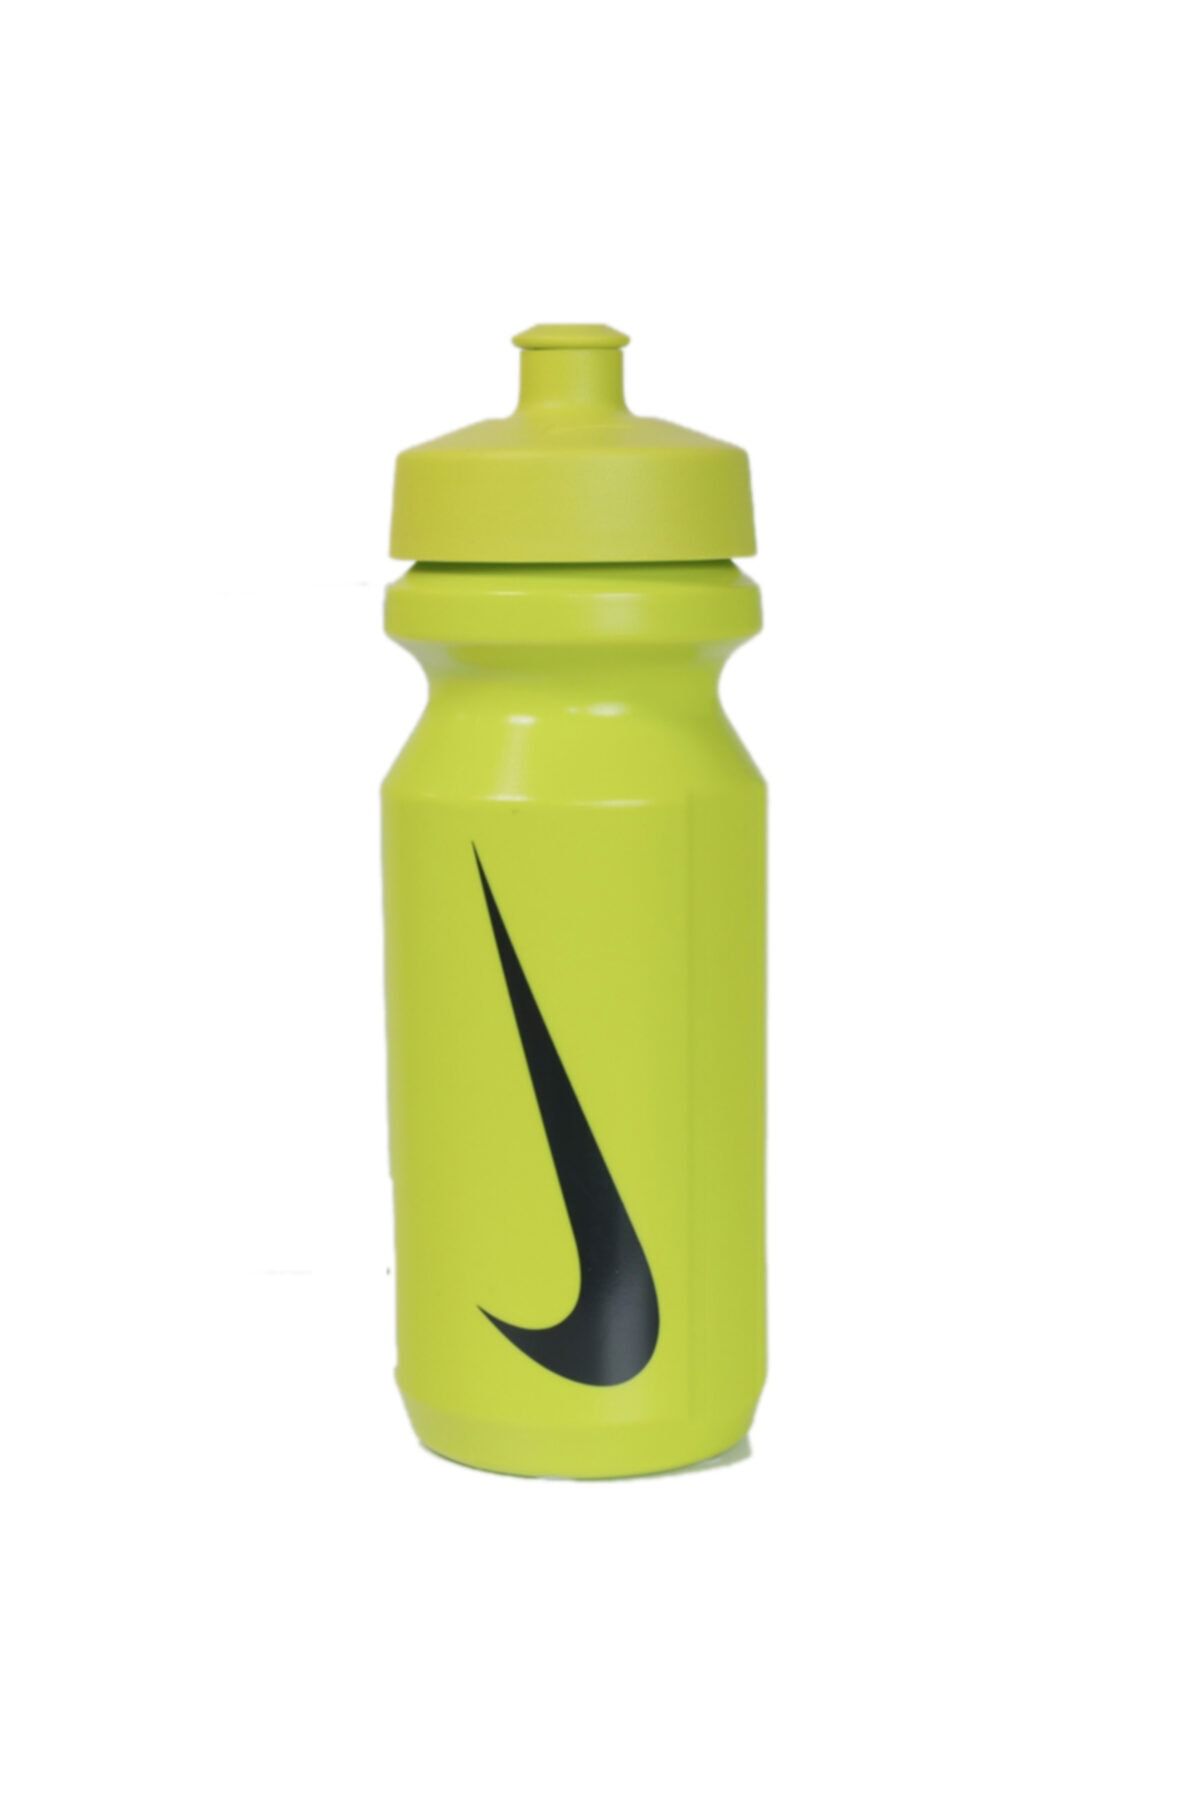 Nike Spor Neon Yeşil Su Matarası  650 ml N.ob.17.316.22